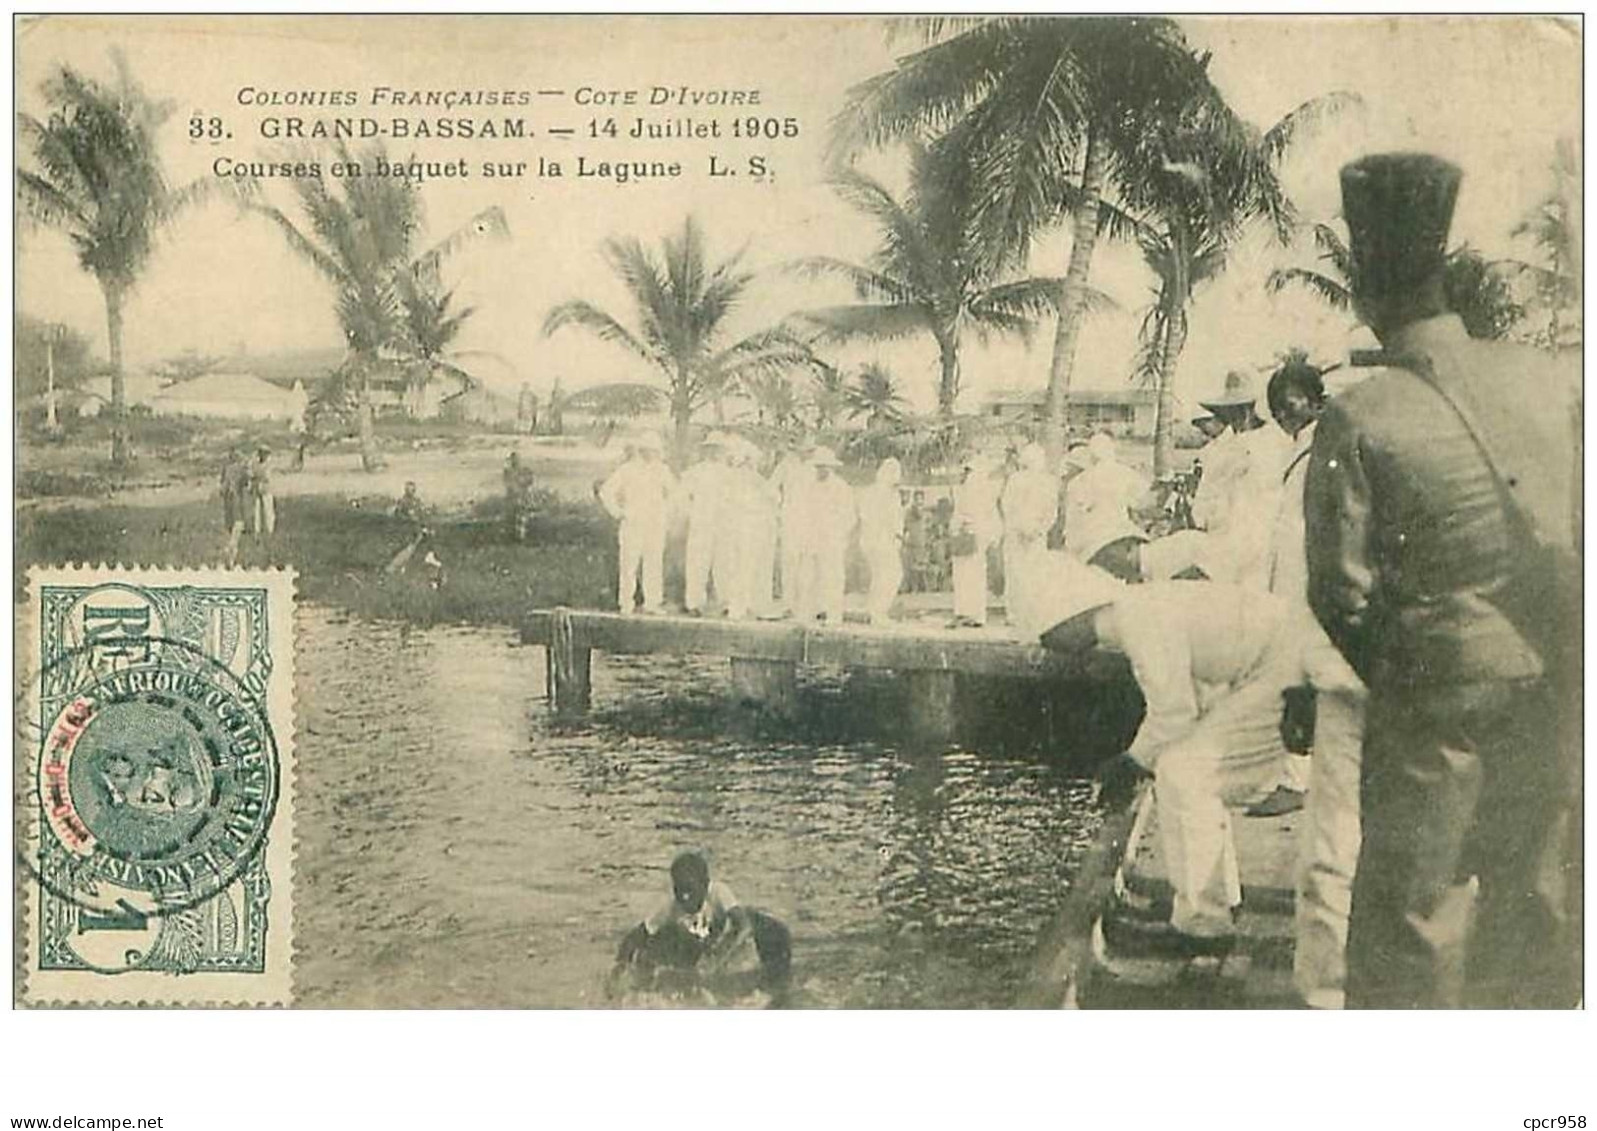 COTE D'IVOIRE.n°31154.GRAND BASSAM.14 JUILLET 1905.COURSES EN BAQUET SUR LA LAGUNE - Elfenbeinküste